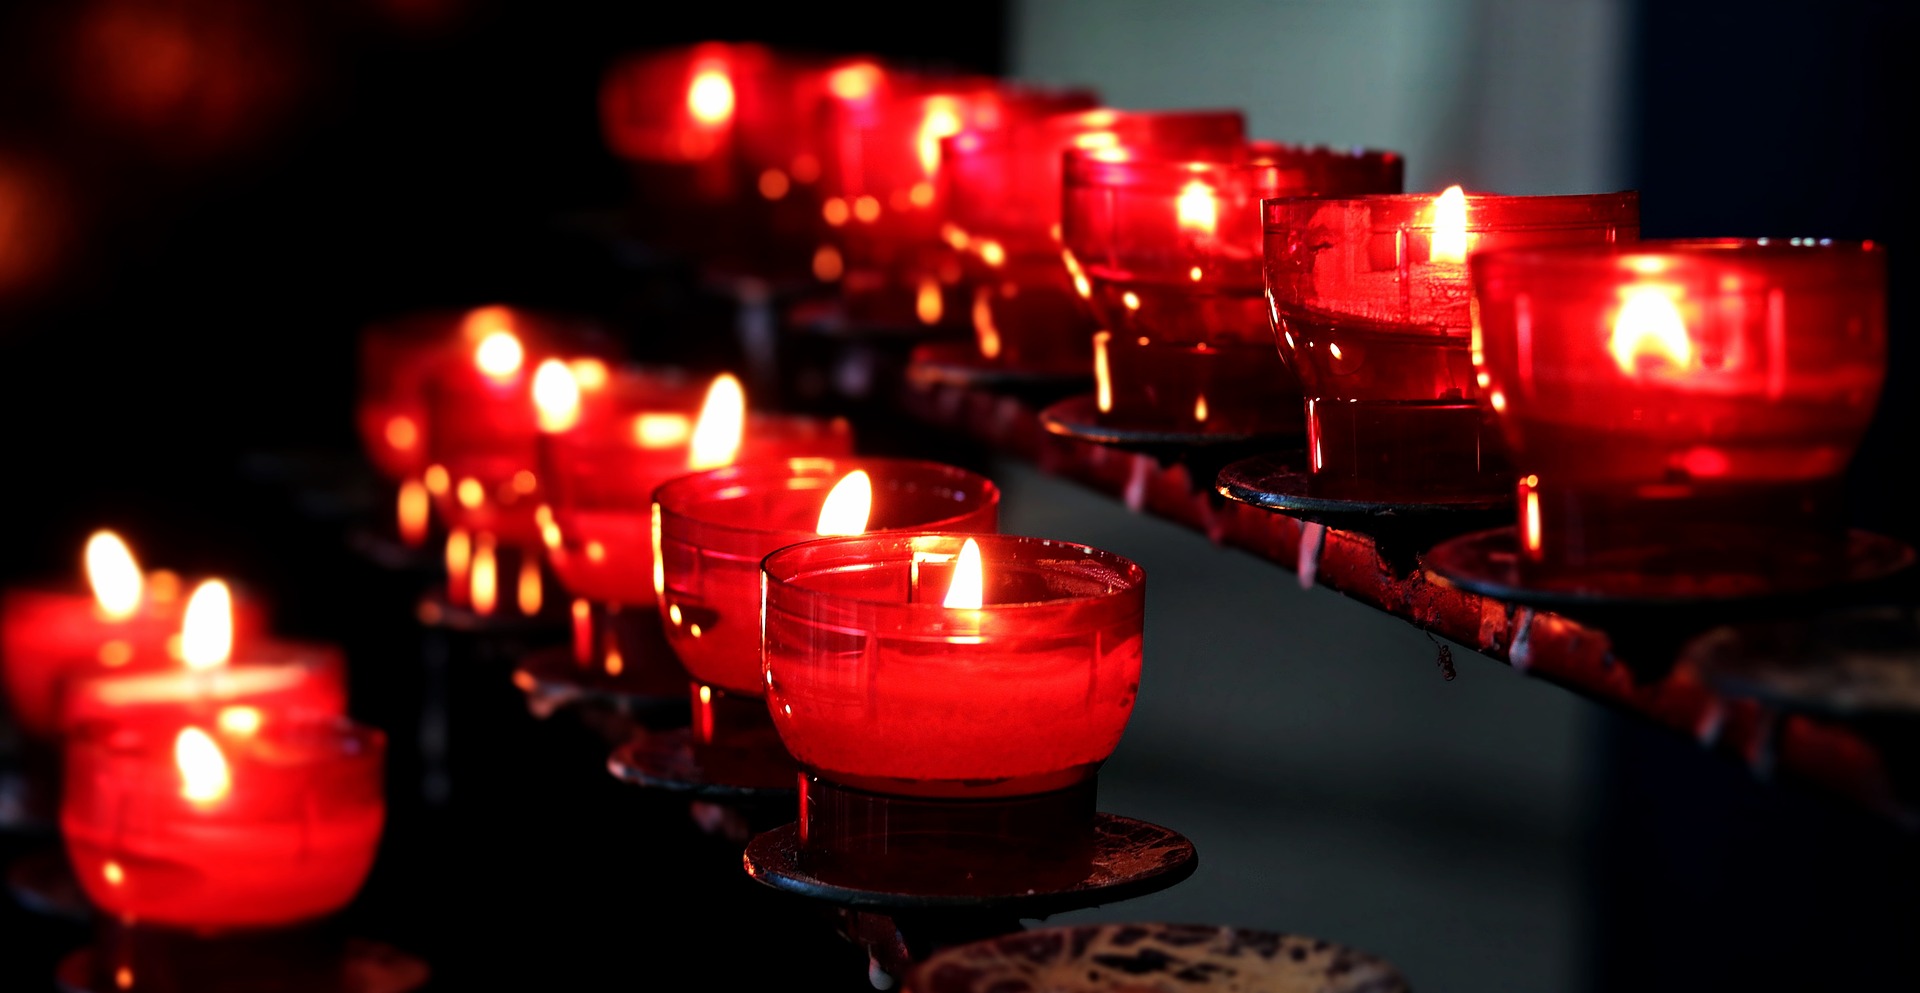 church candles, Bild von S. Hermann & F. Richter auf Pixabay